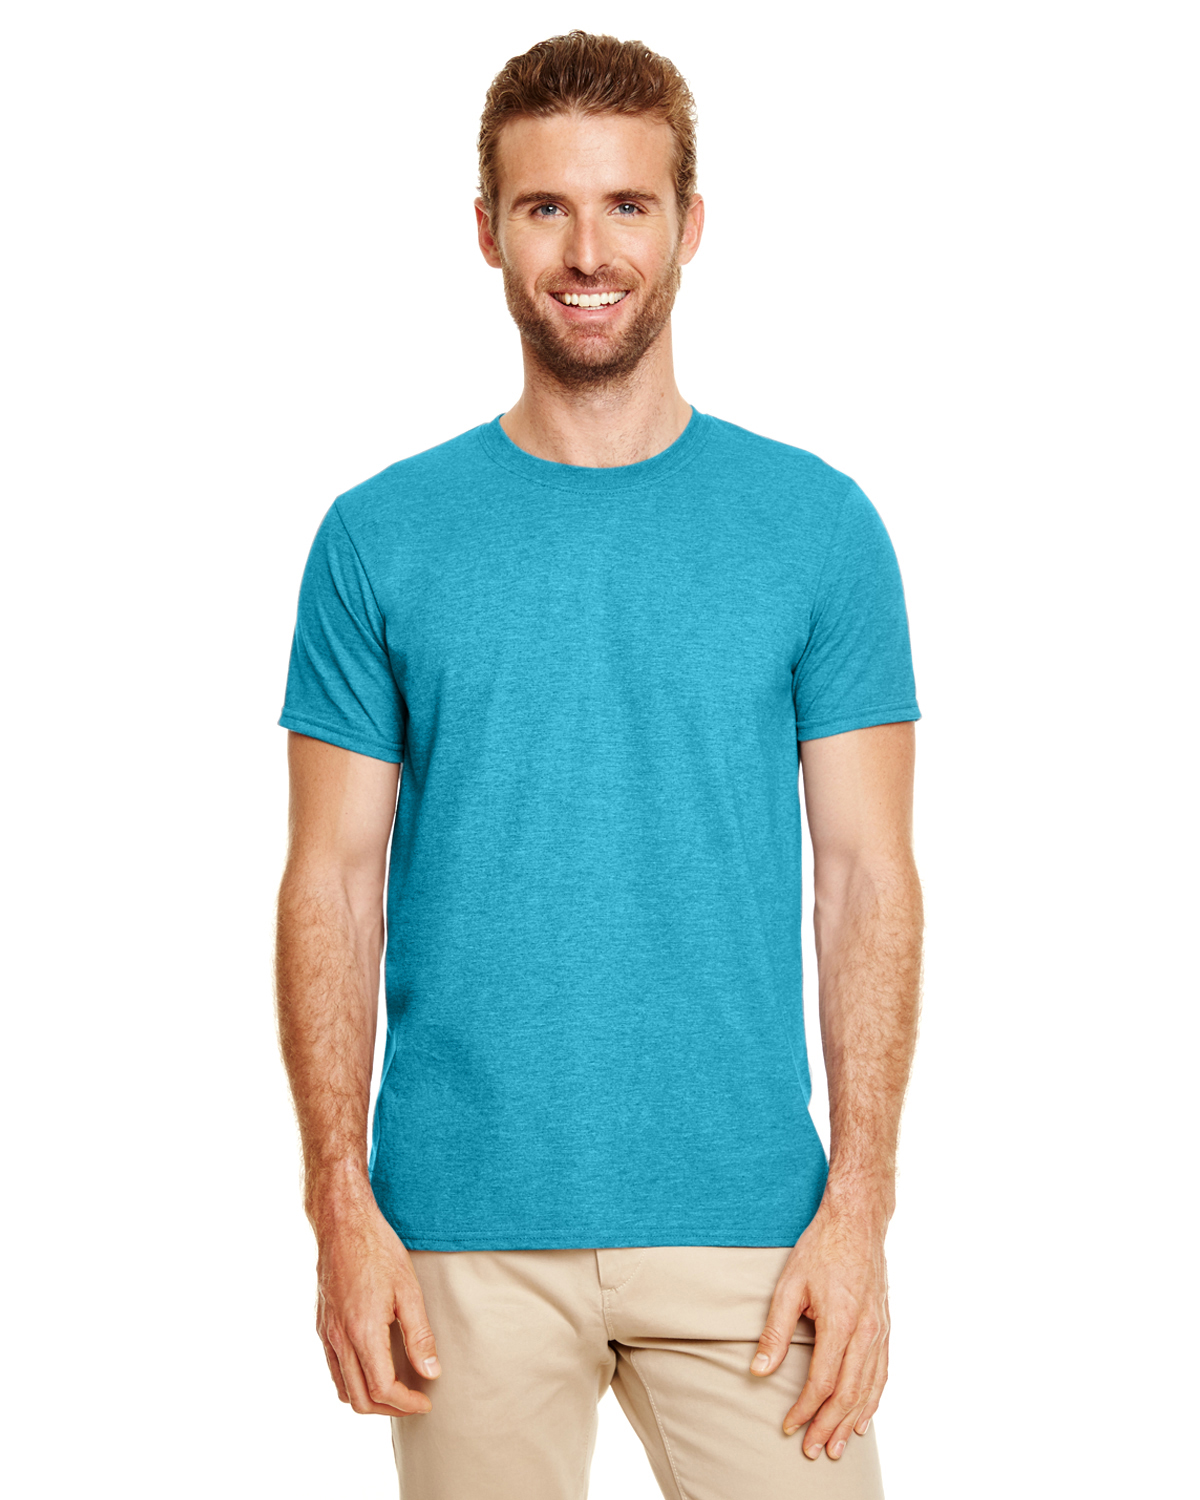 Galapagos Games T-Shirt Unisex